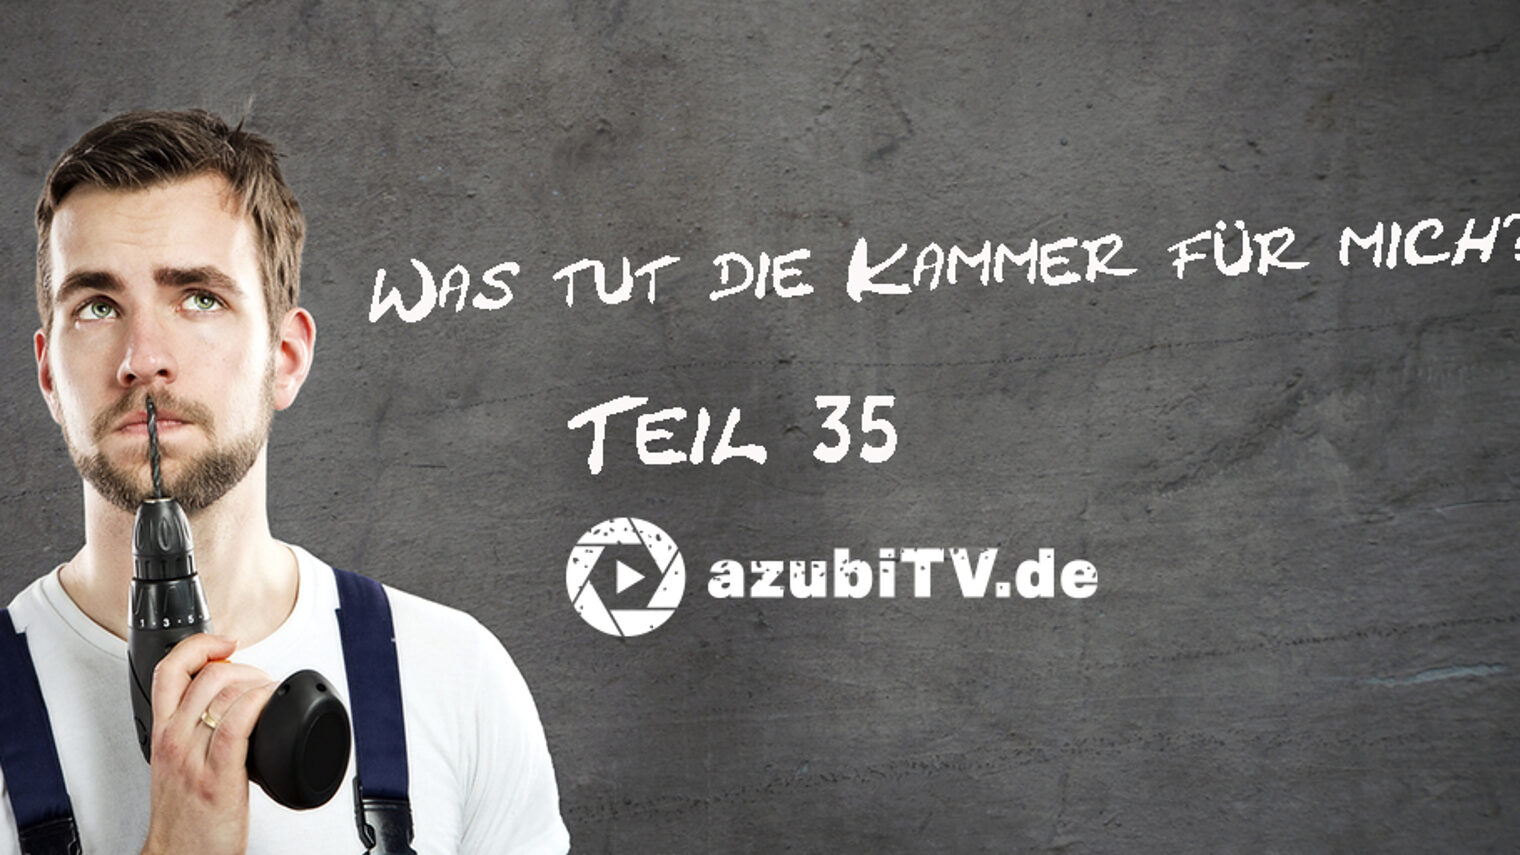 Was-tut-die-Kammer-fuer-mich-Teil-35-azubiTV